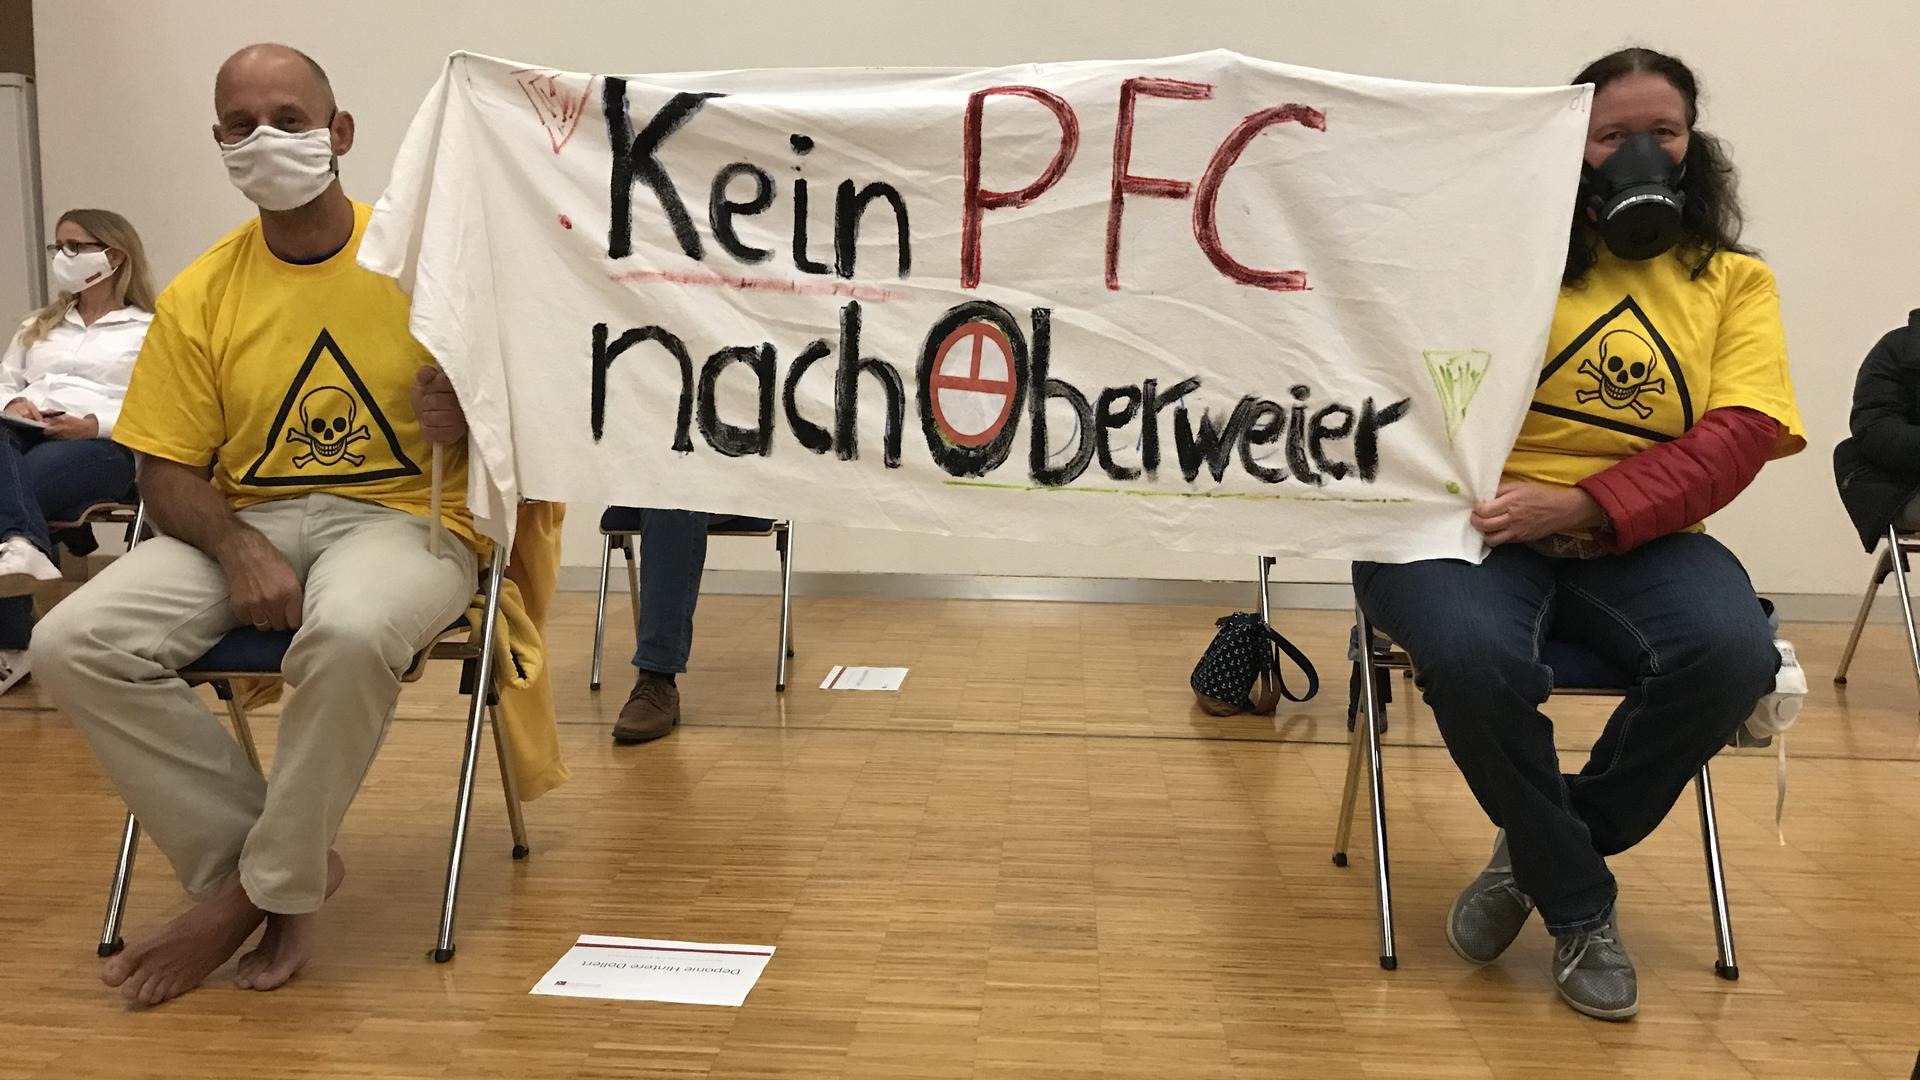 Die Zuhörer zeigen klare Kante: „Kein PFC nach Oberweier“ ist die deutliche Botschaft der Bannerträger und Redner in der Jahnhalle Gaggenau.